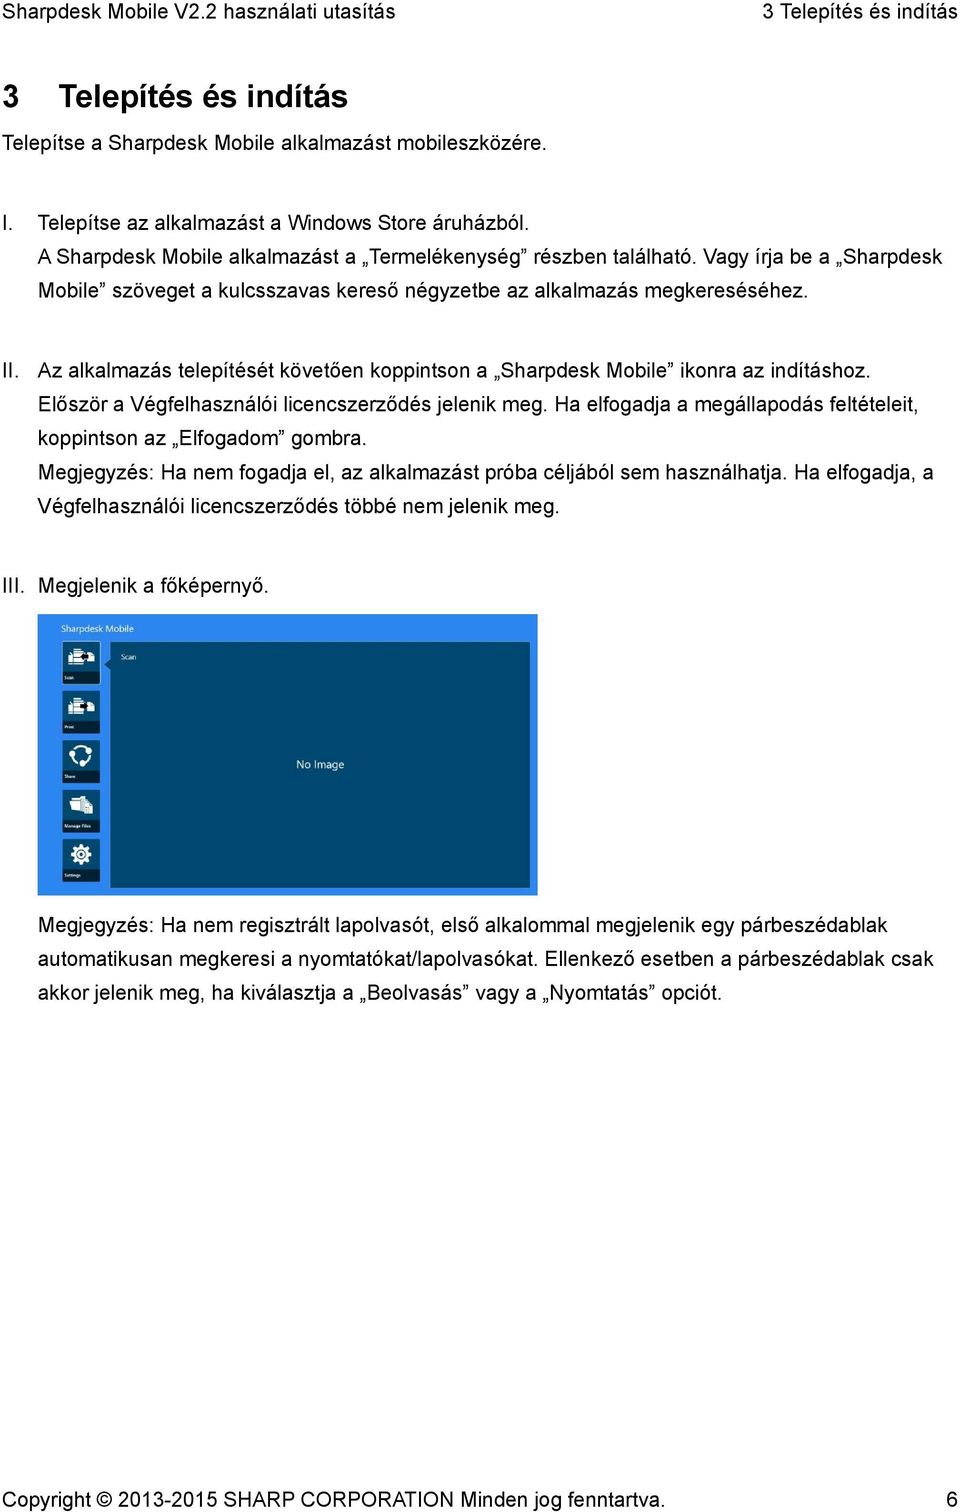 Az alkalmazás telepítését követően koppintson a Sharpdesk Mobile ikonra az indításhoz. Először a Végfelhasználói licencszerződés jelenik meg.